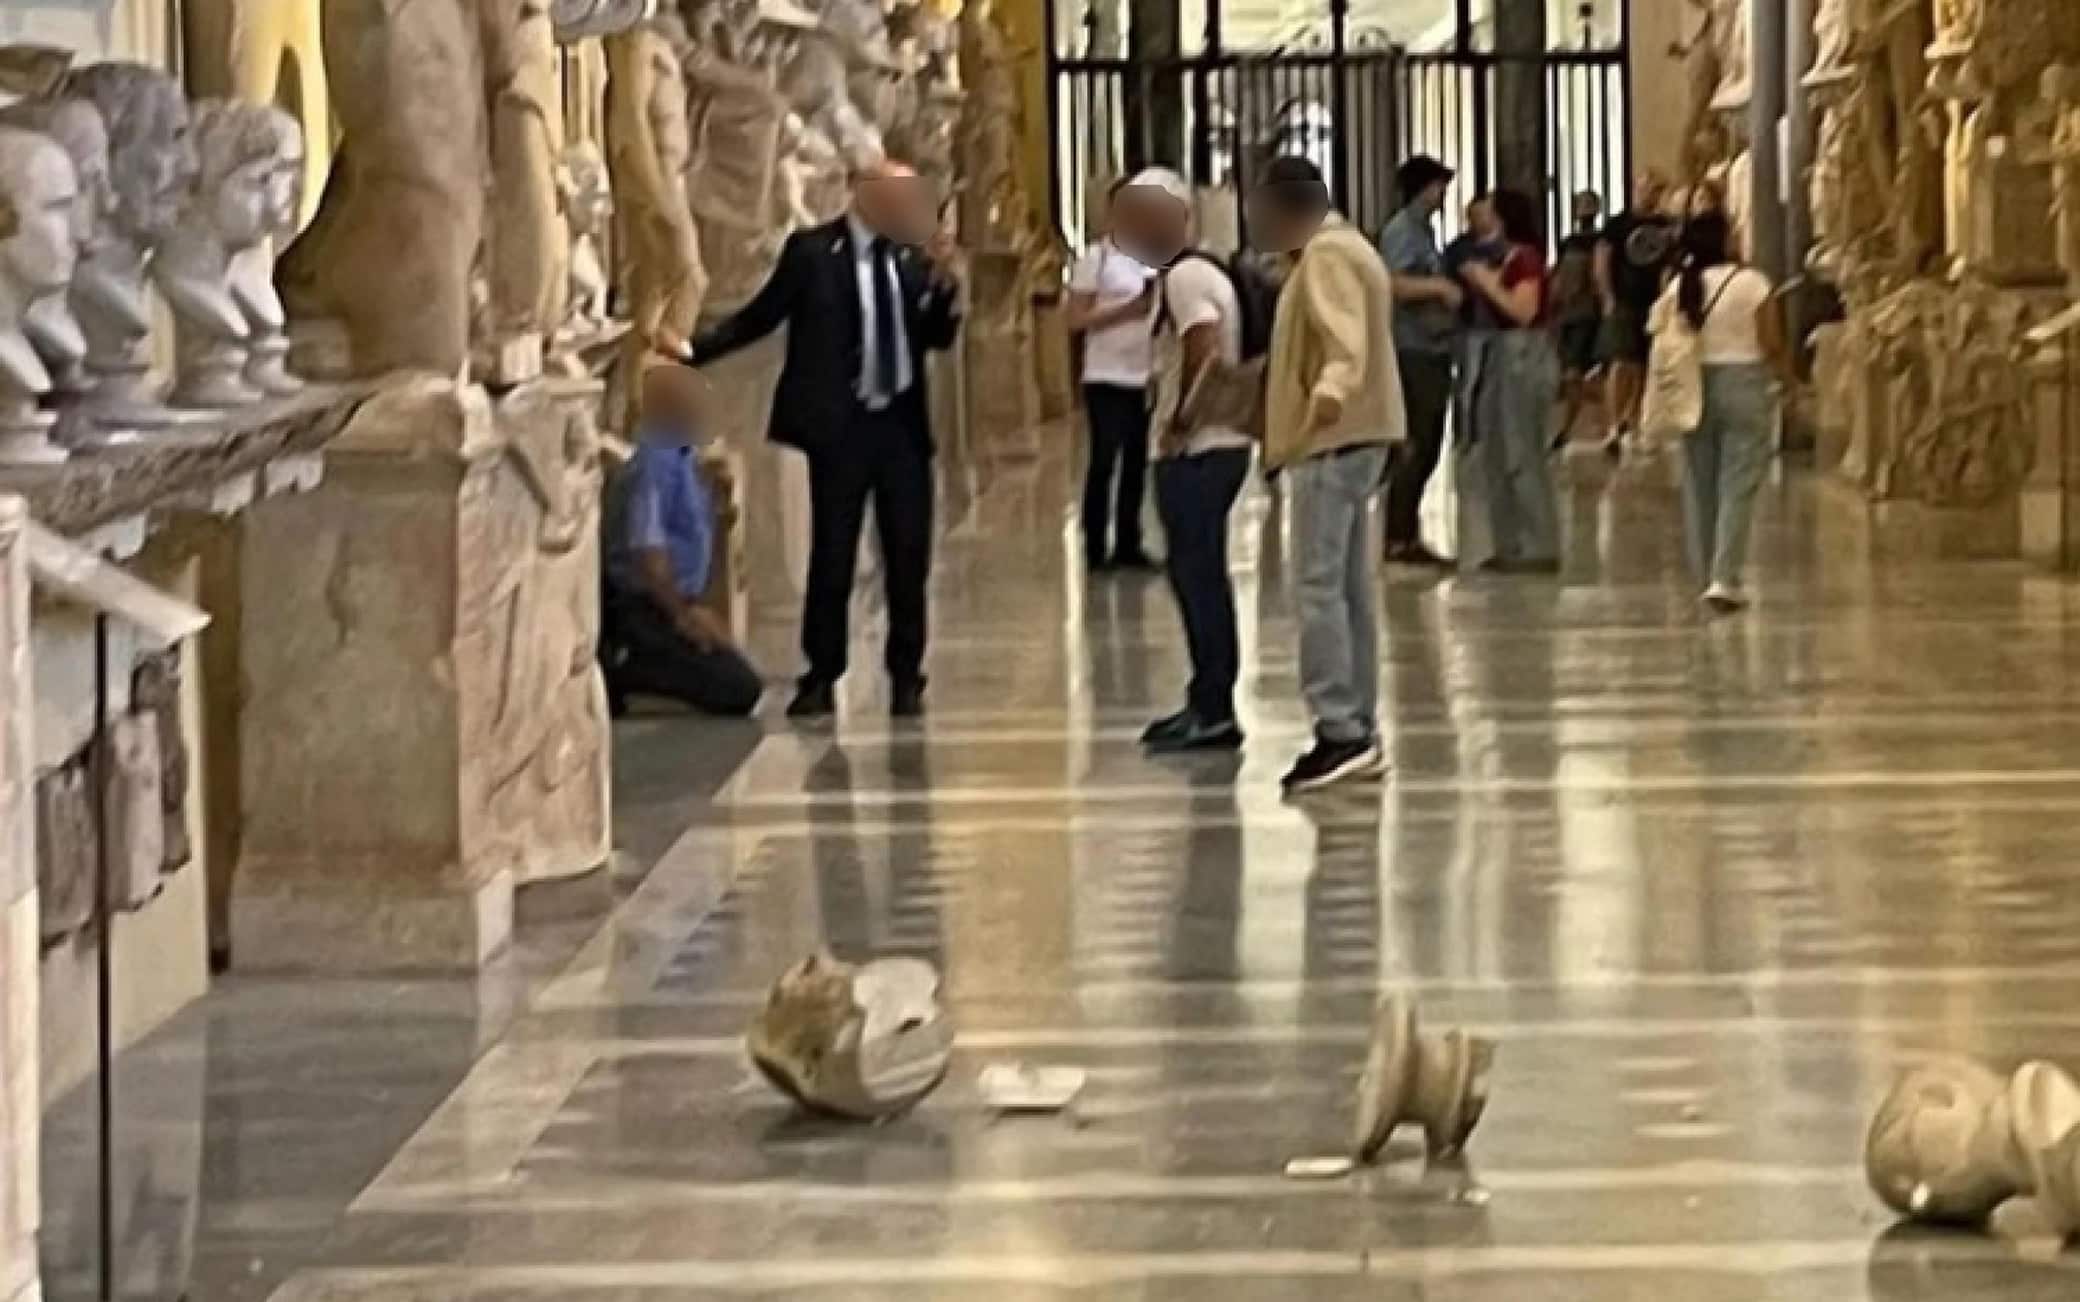 Due sculture sono state danneggiate all'interno dei Musei Vaticani a Roma. Un turista straniero avrebbe scaraventato a terra due busti antichi poggiati su due mensole all'interno della galleria Chiaramonti. L'episodio è avvenuto questa mattina. Il turista è stato fermato e portato negli uffici di polizia per essere interrogato. Le indagini sono ancora in corso.
INSTAGRAM/ Mo(n)stre
+++ATTENZIONE LA FOTO NON PUO' ESSERE PUBBLICATA O RIPRODOTTA SENZA L'AUTORIZZAZIONE DELLA FONTE DI ORIGINE CUI SI RINVIA+++ (NPK)